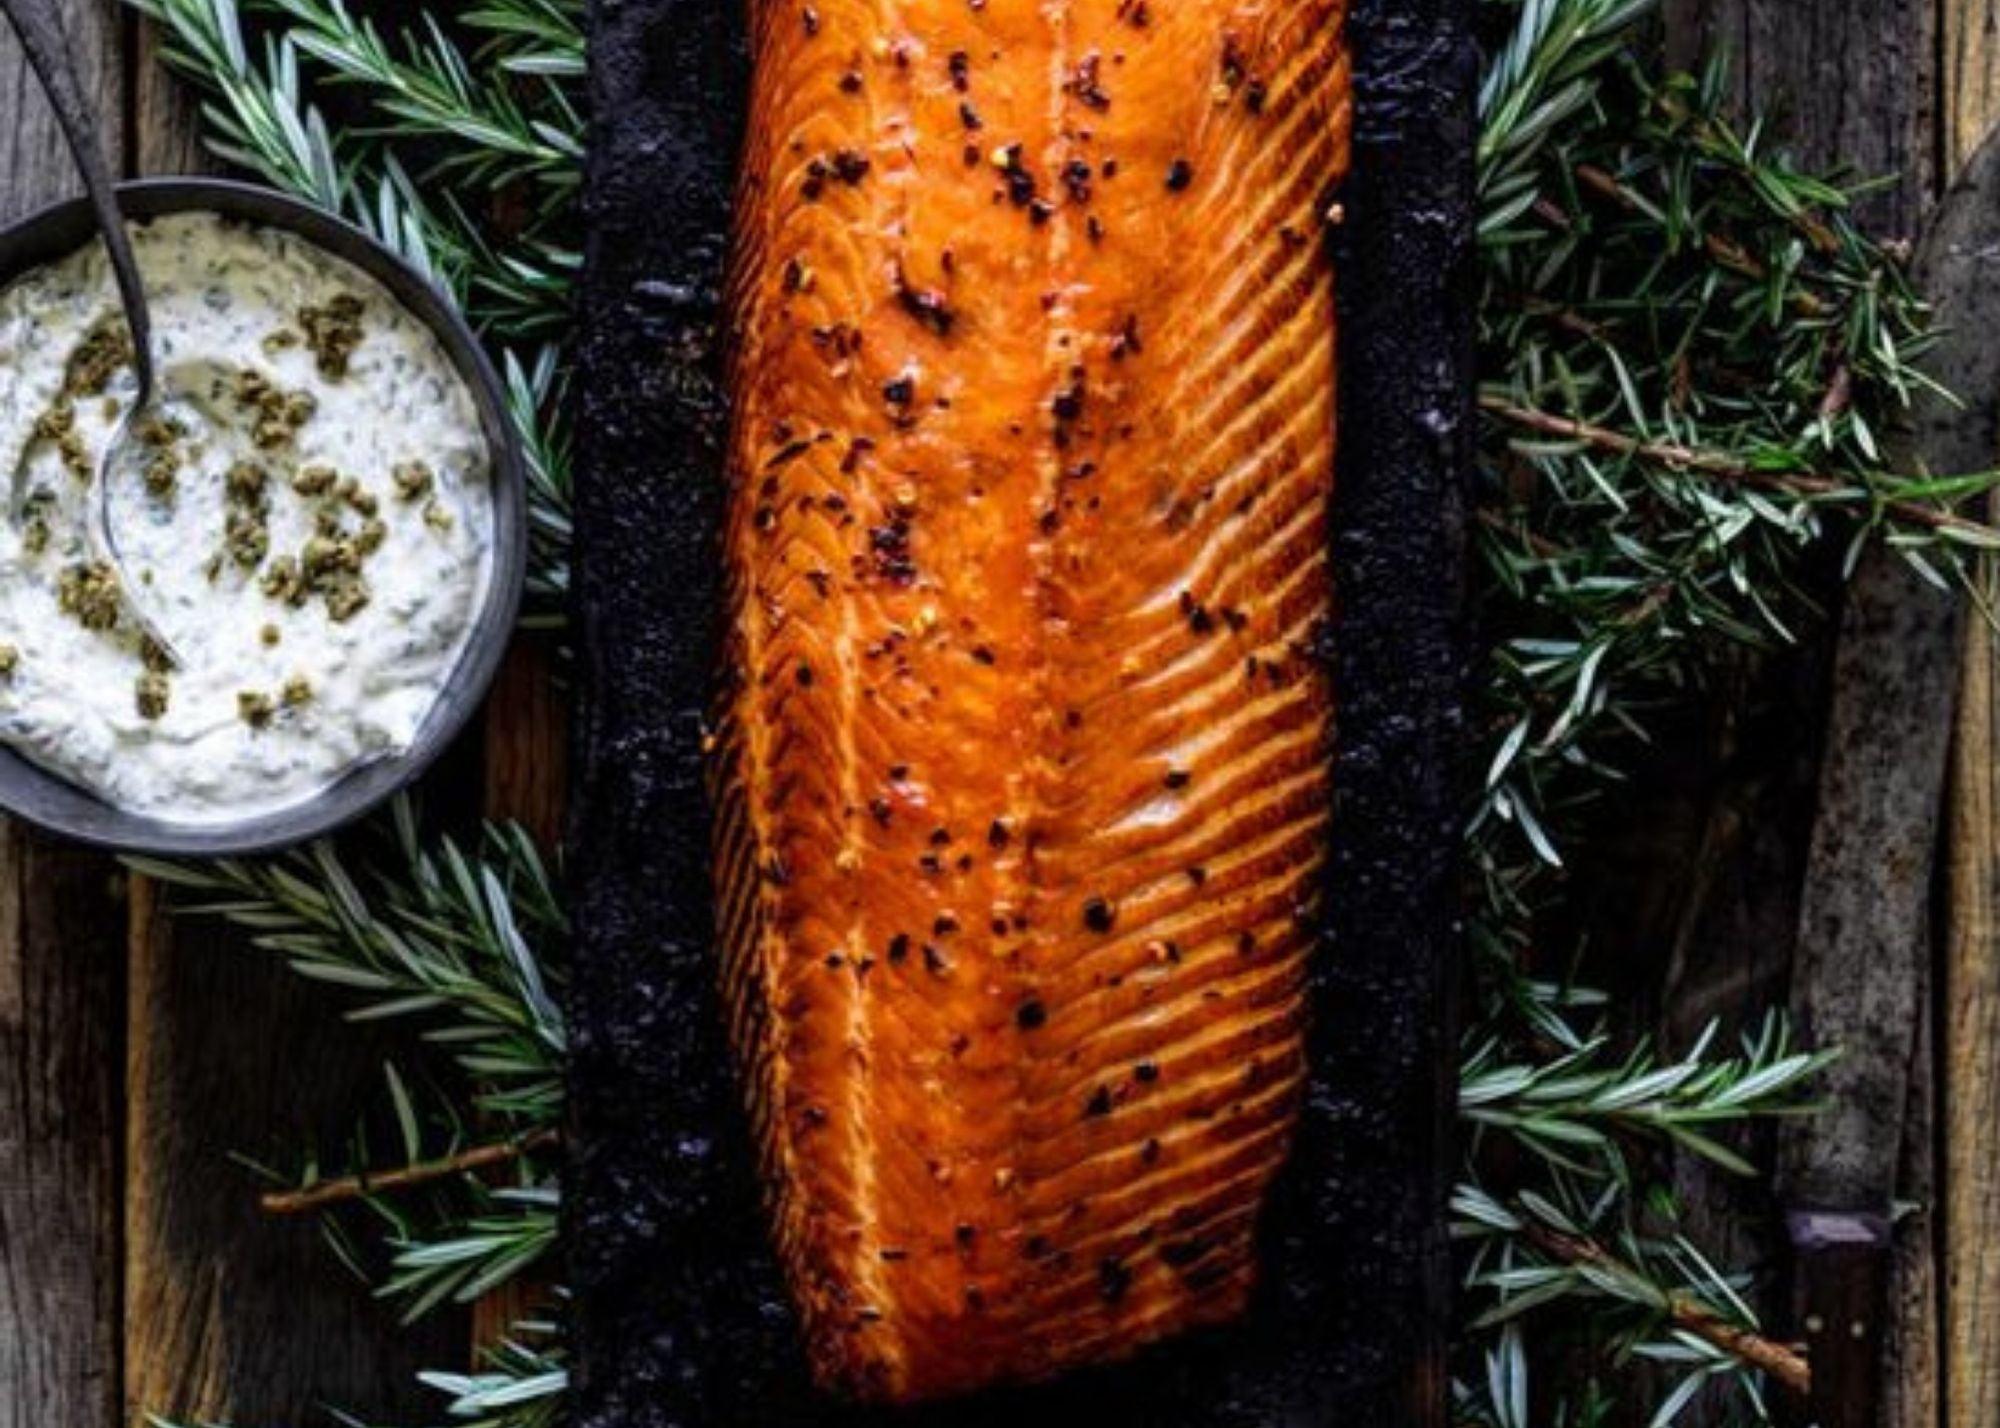 RECIPE: Hot smoked cured Salmon - The Hamilton Hamper